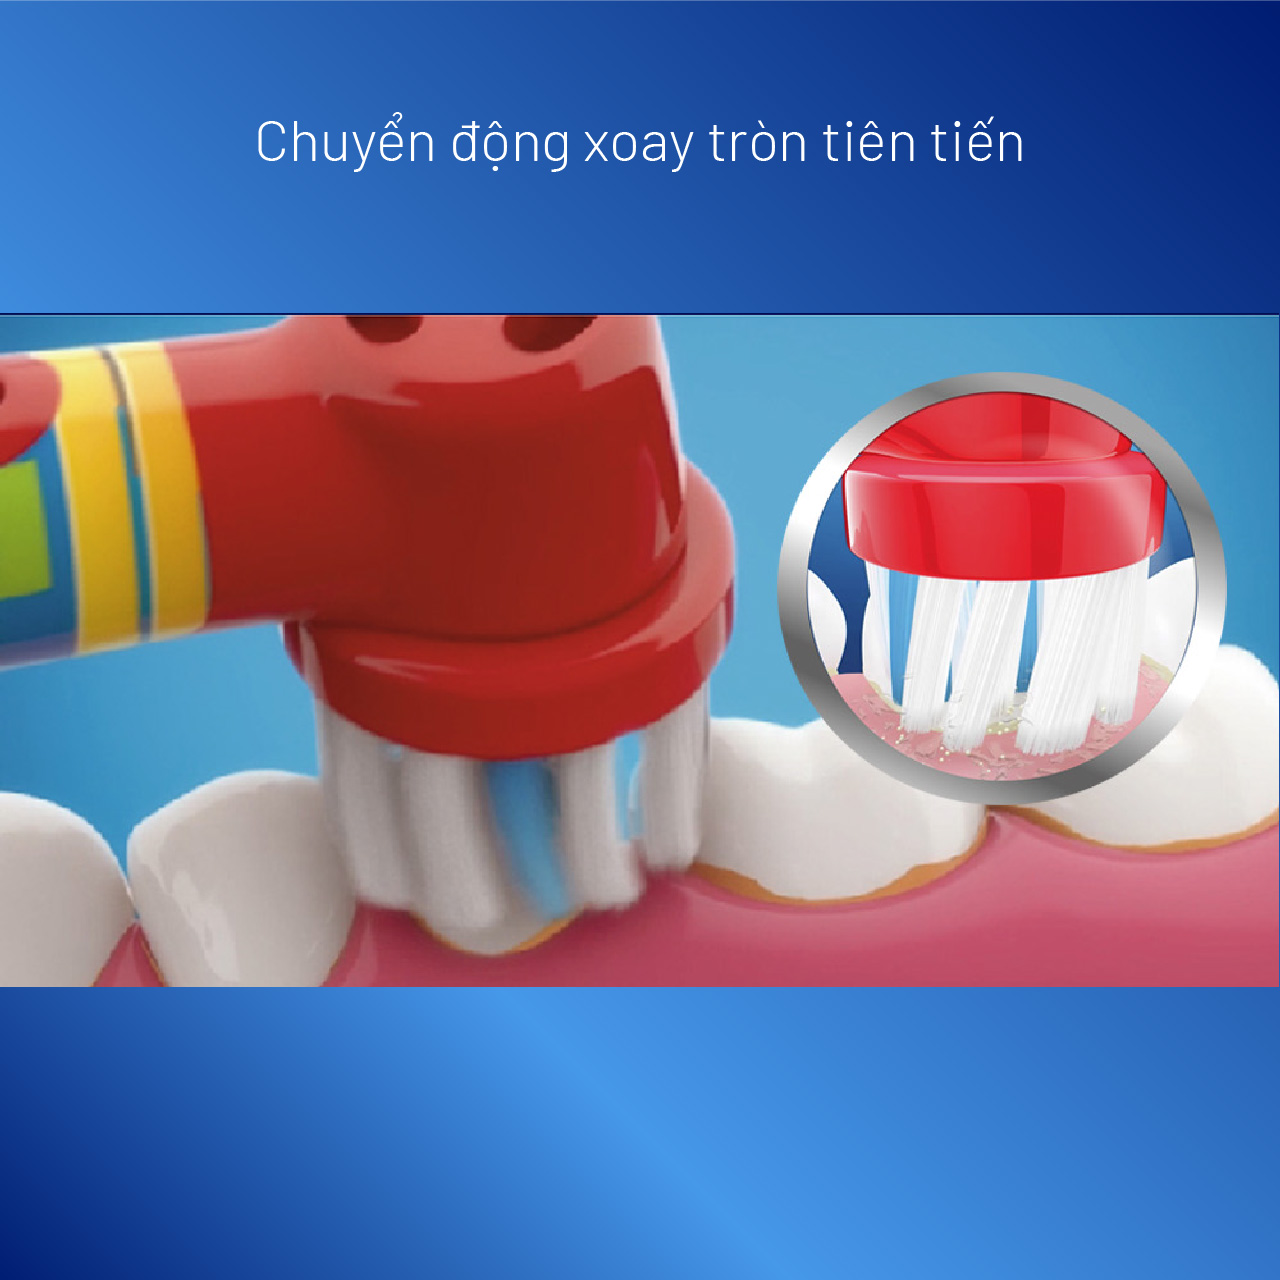 Bàn chải điện trẻ em Oral-B Pro D100 Disney Frozen - 2 chế độ chải - Hàng chính hãng